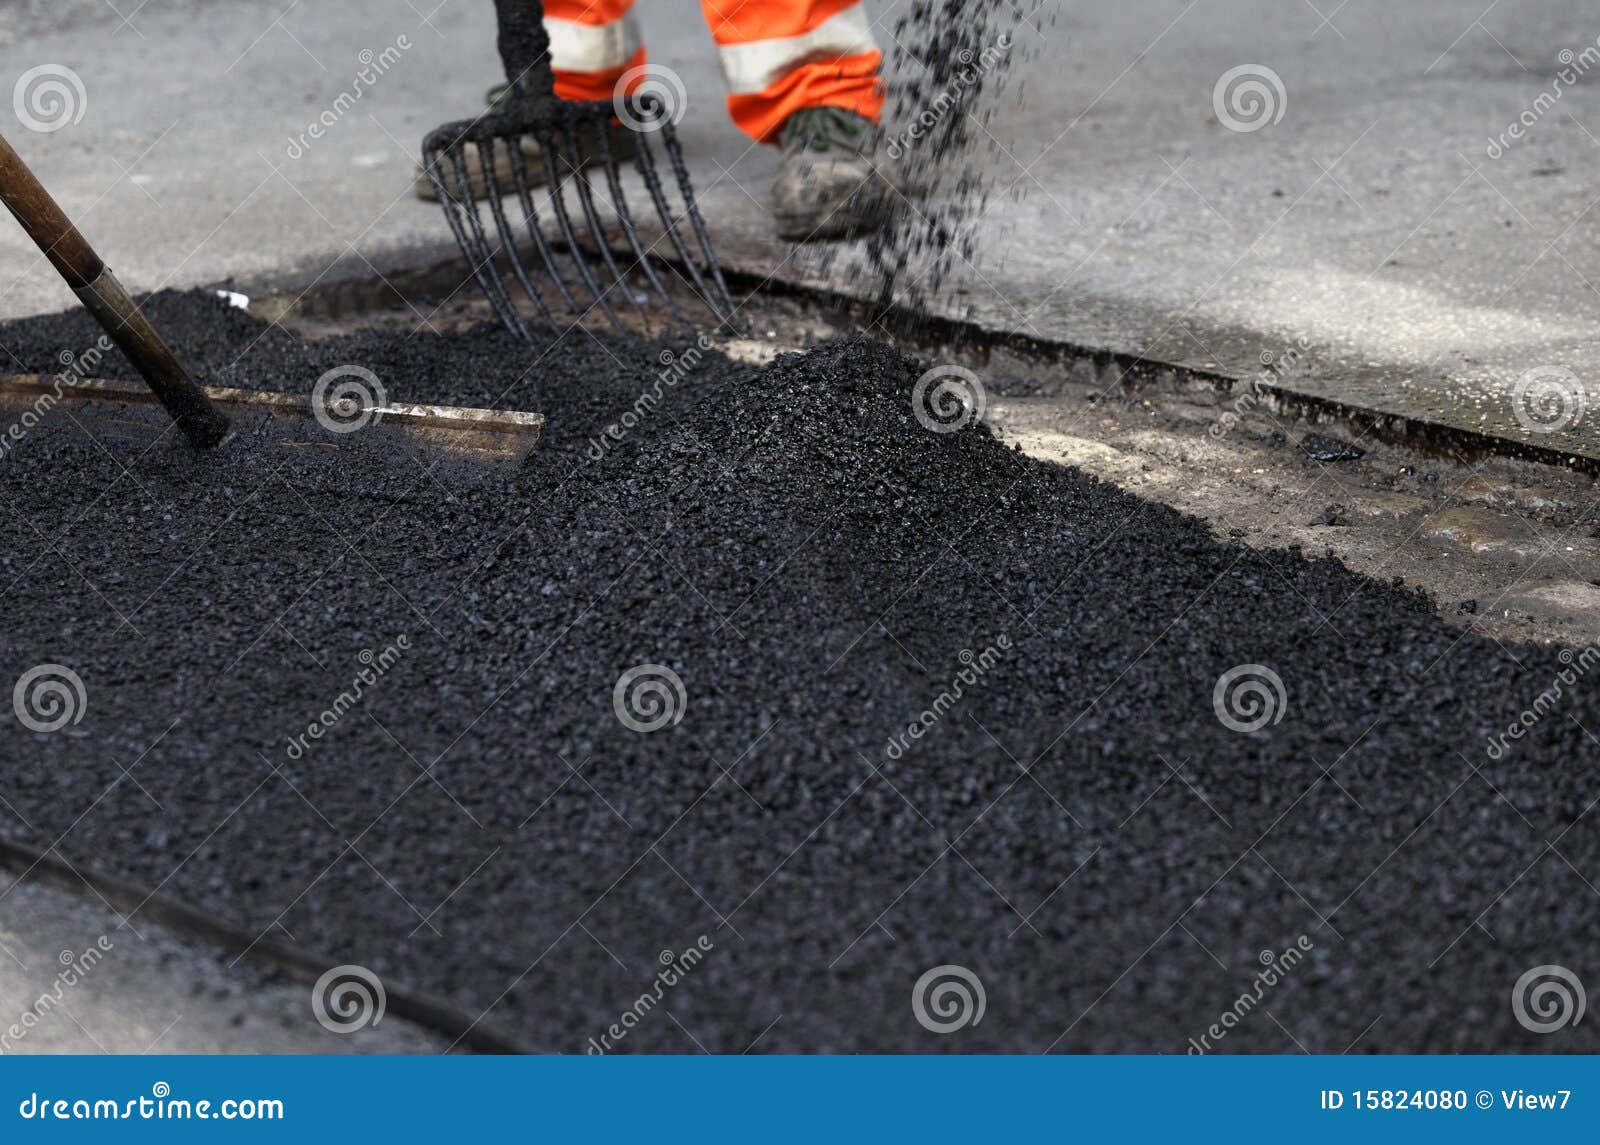 workers smoothing asphalt